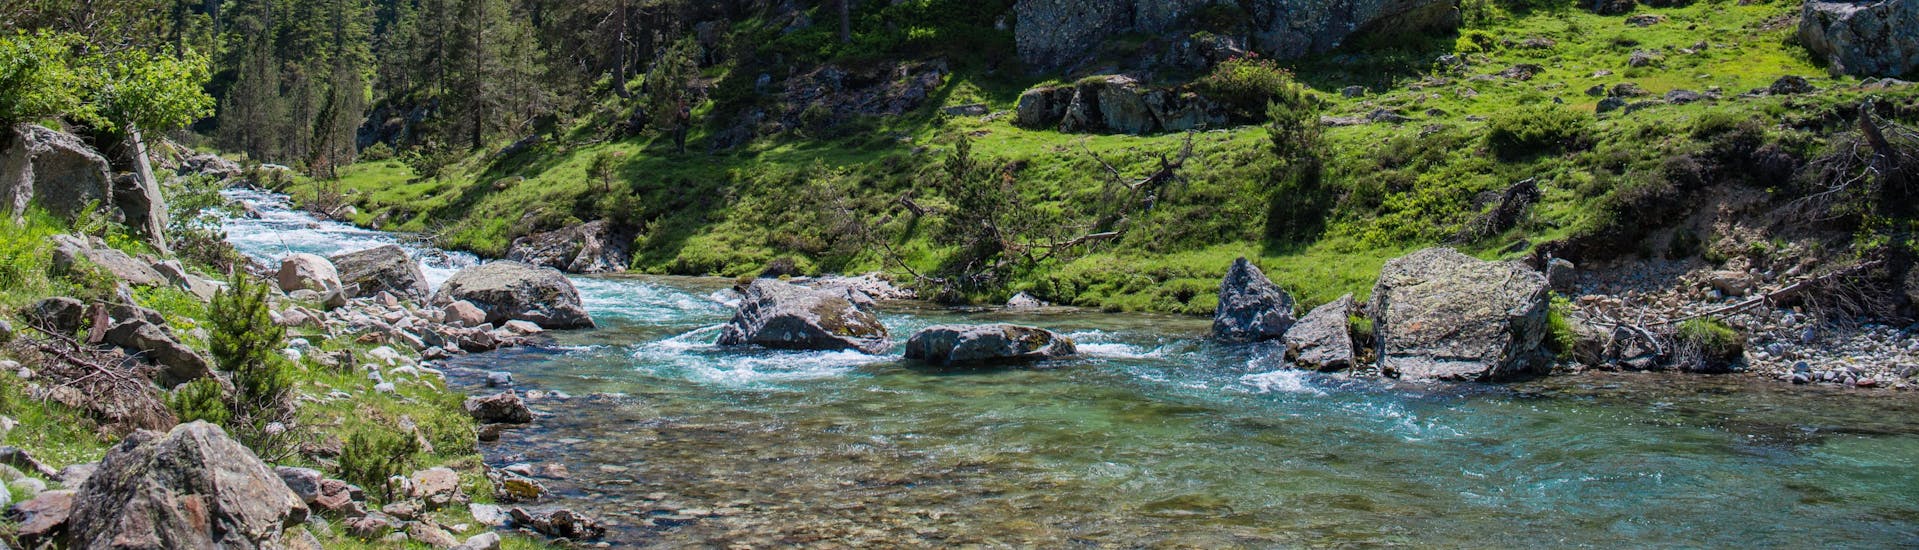 Une rivière coule au milieu d'un paysage verdoyant au milieu des Pyrénées, une destination prisées pour le rafting et le canyoning en France.